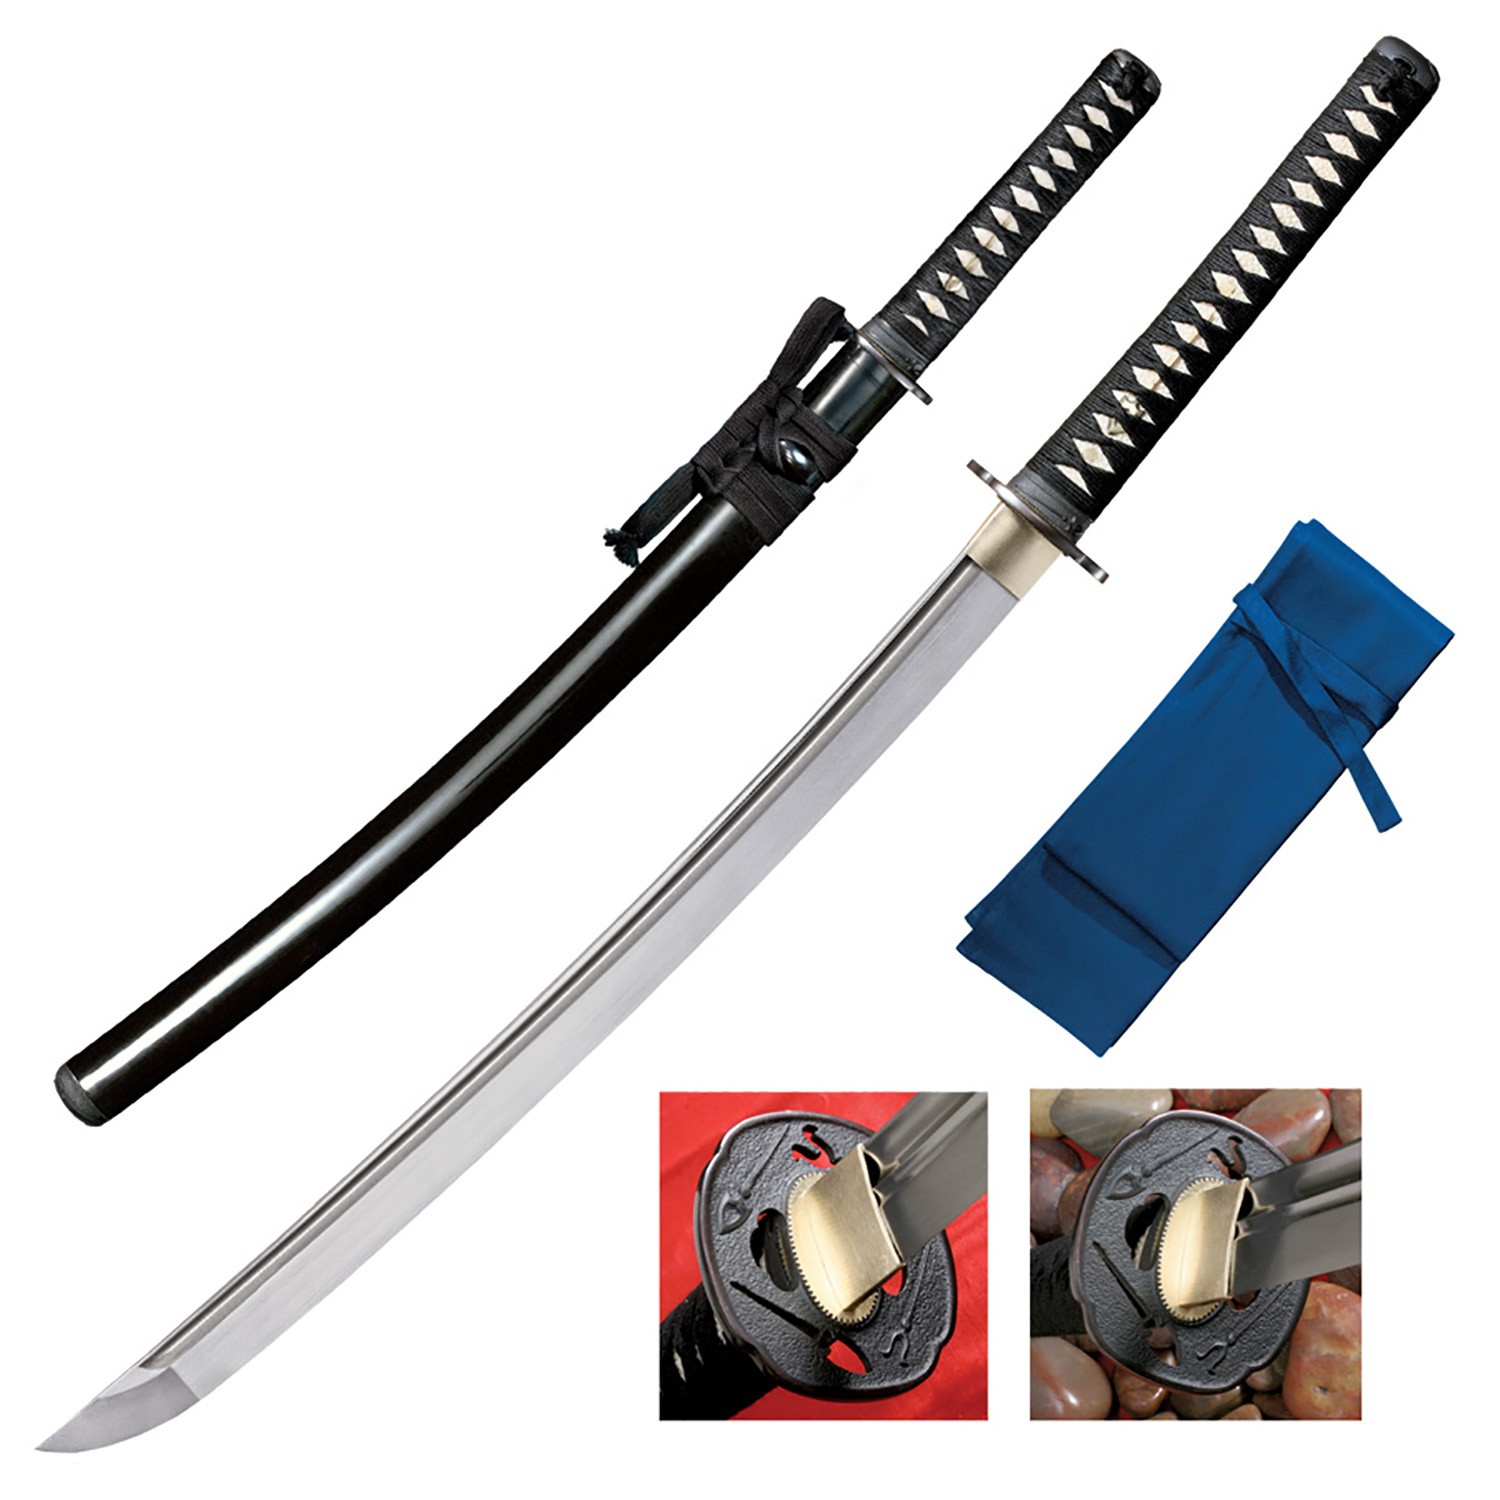 Cold Steel Chisa Katana Sword - 36" Overall length